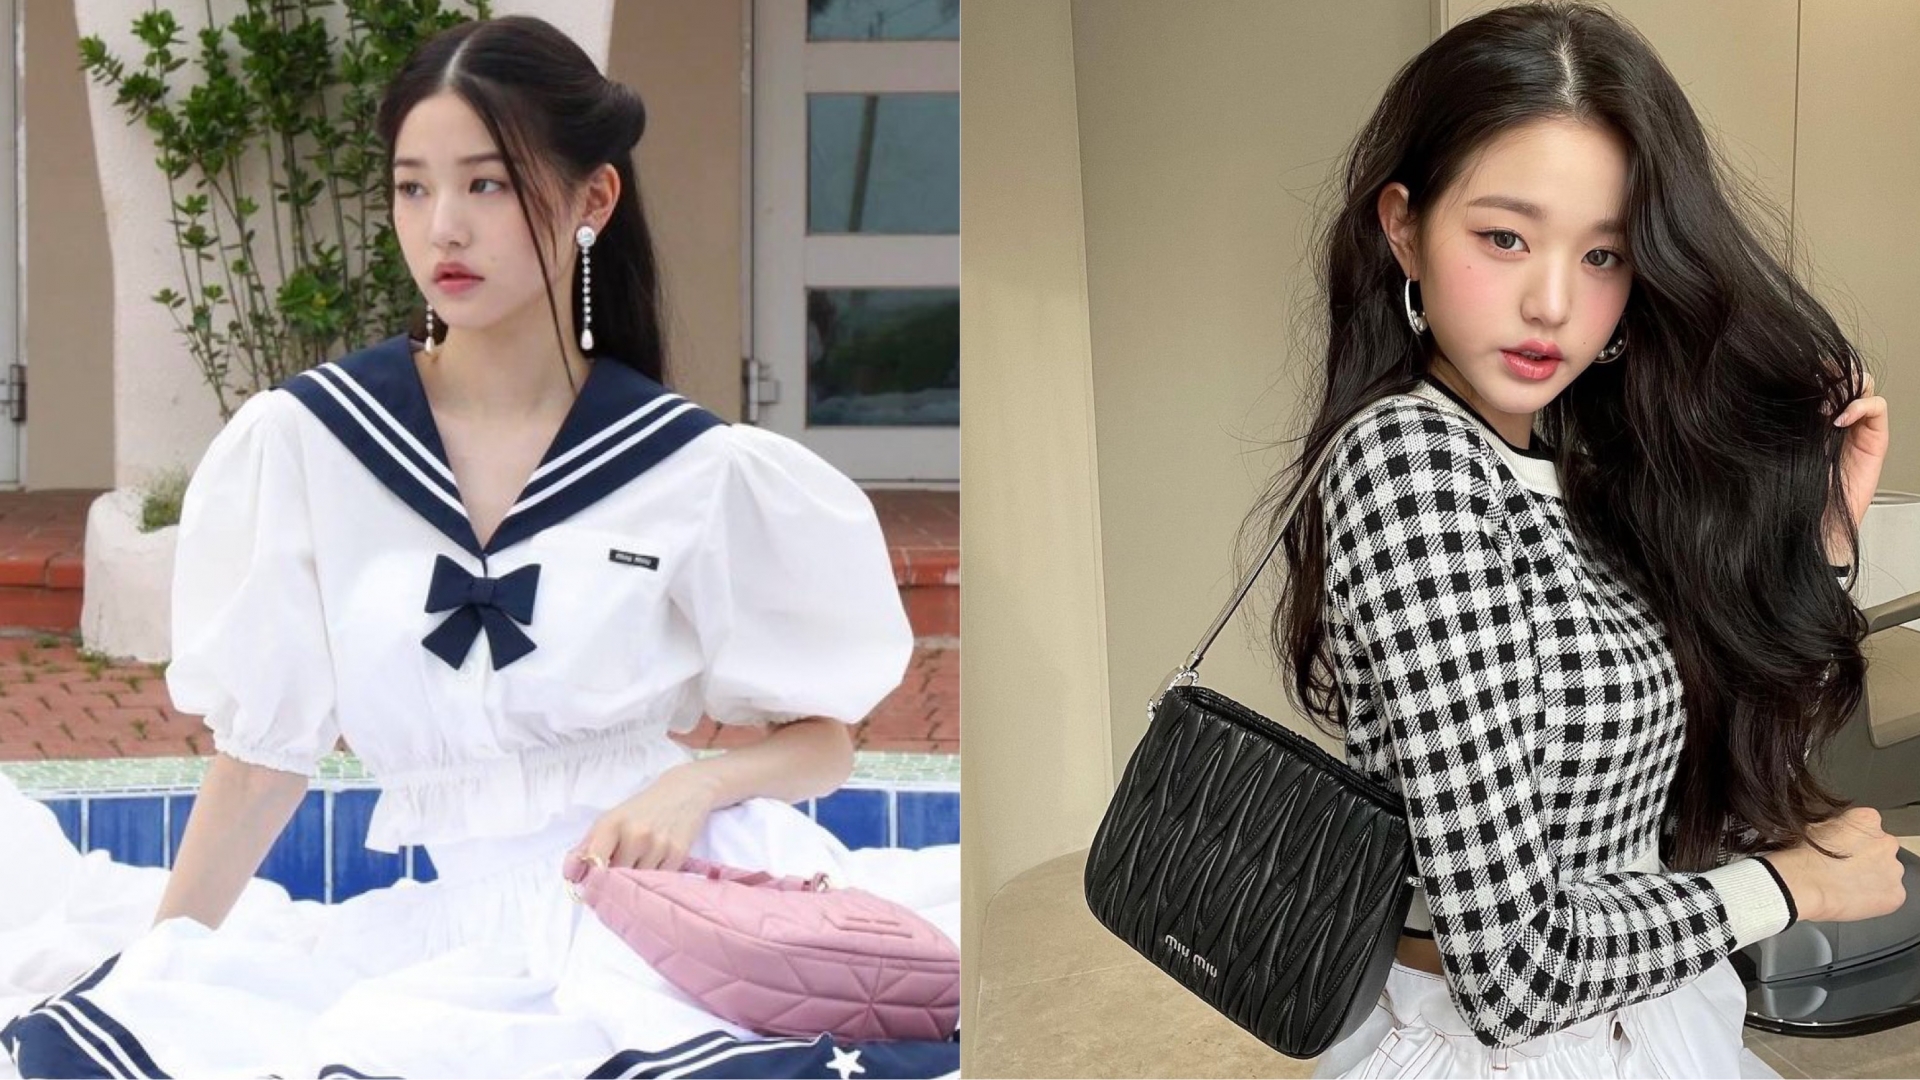 Nhan sắc và thần thái của mỹ nhân 18 tuổi được netizen khen ngợi hết lời và cho rằng cực kì phù hợp với phong cách trẻ trung, sang chảnh vốn có của nhà Miu Miu.